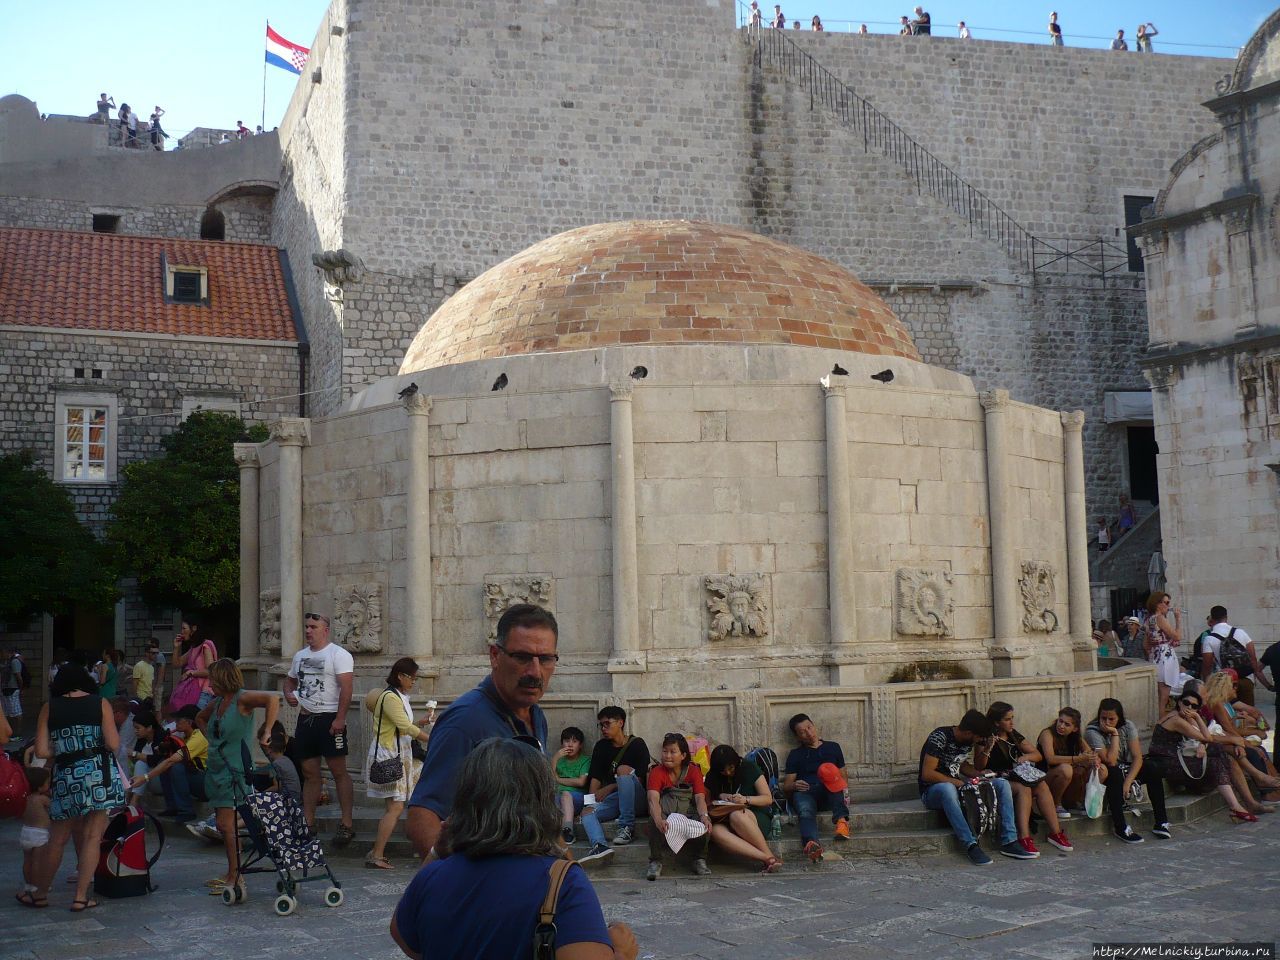 Большой фонтан Онофрио Дубровник, Хорватия